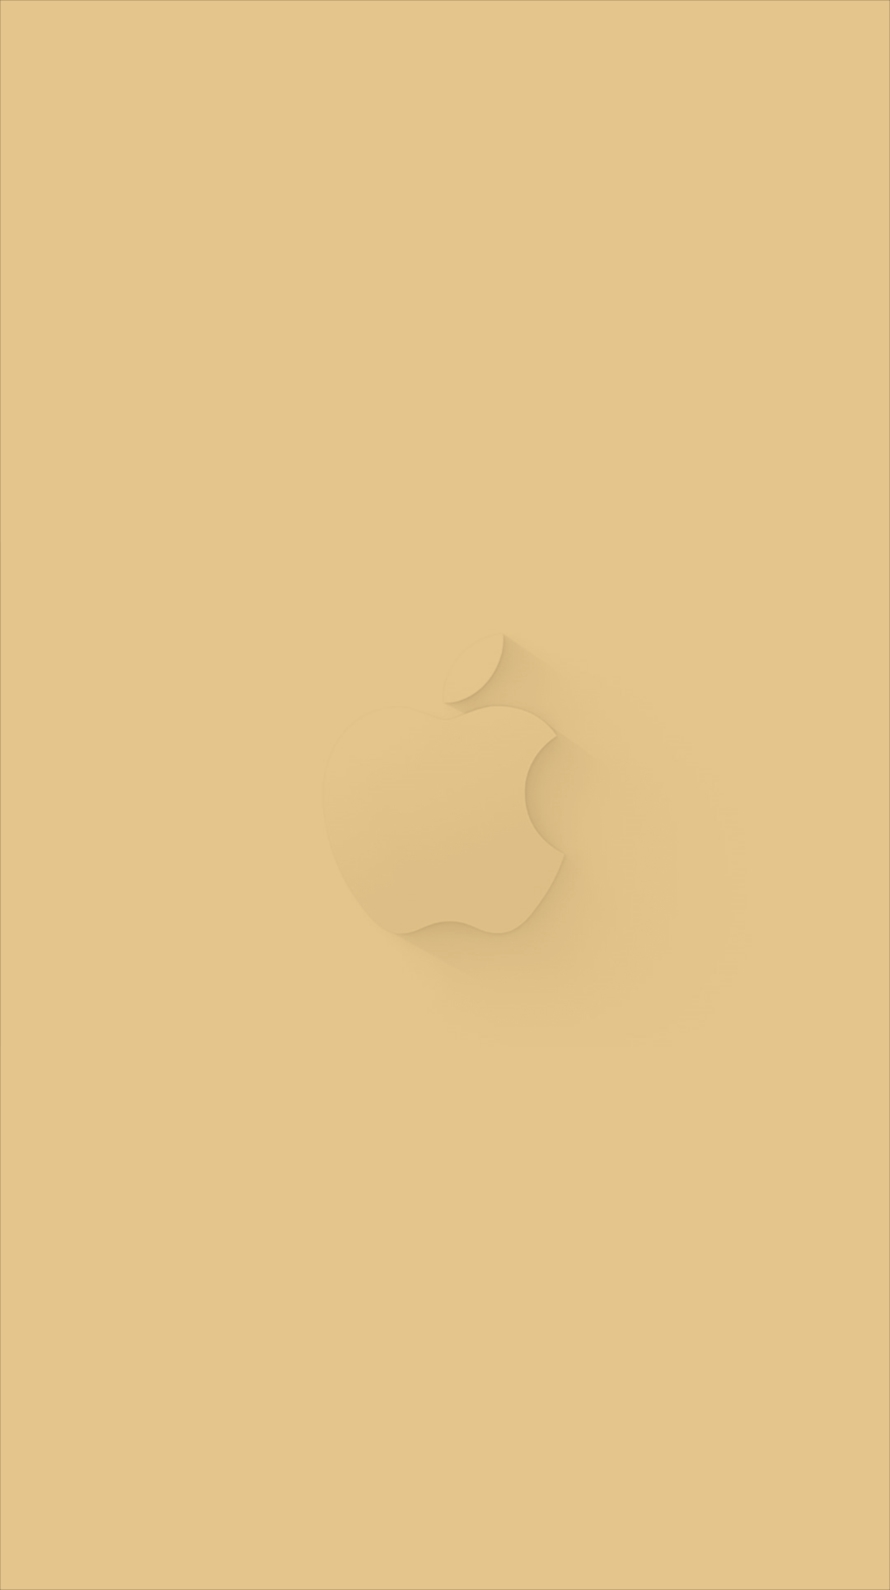 カーキー アップルロゴ Iphone6壁紙 Wallpaperbox